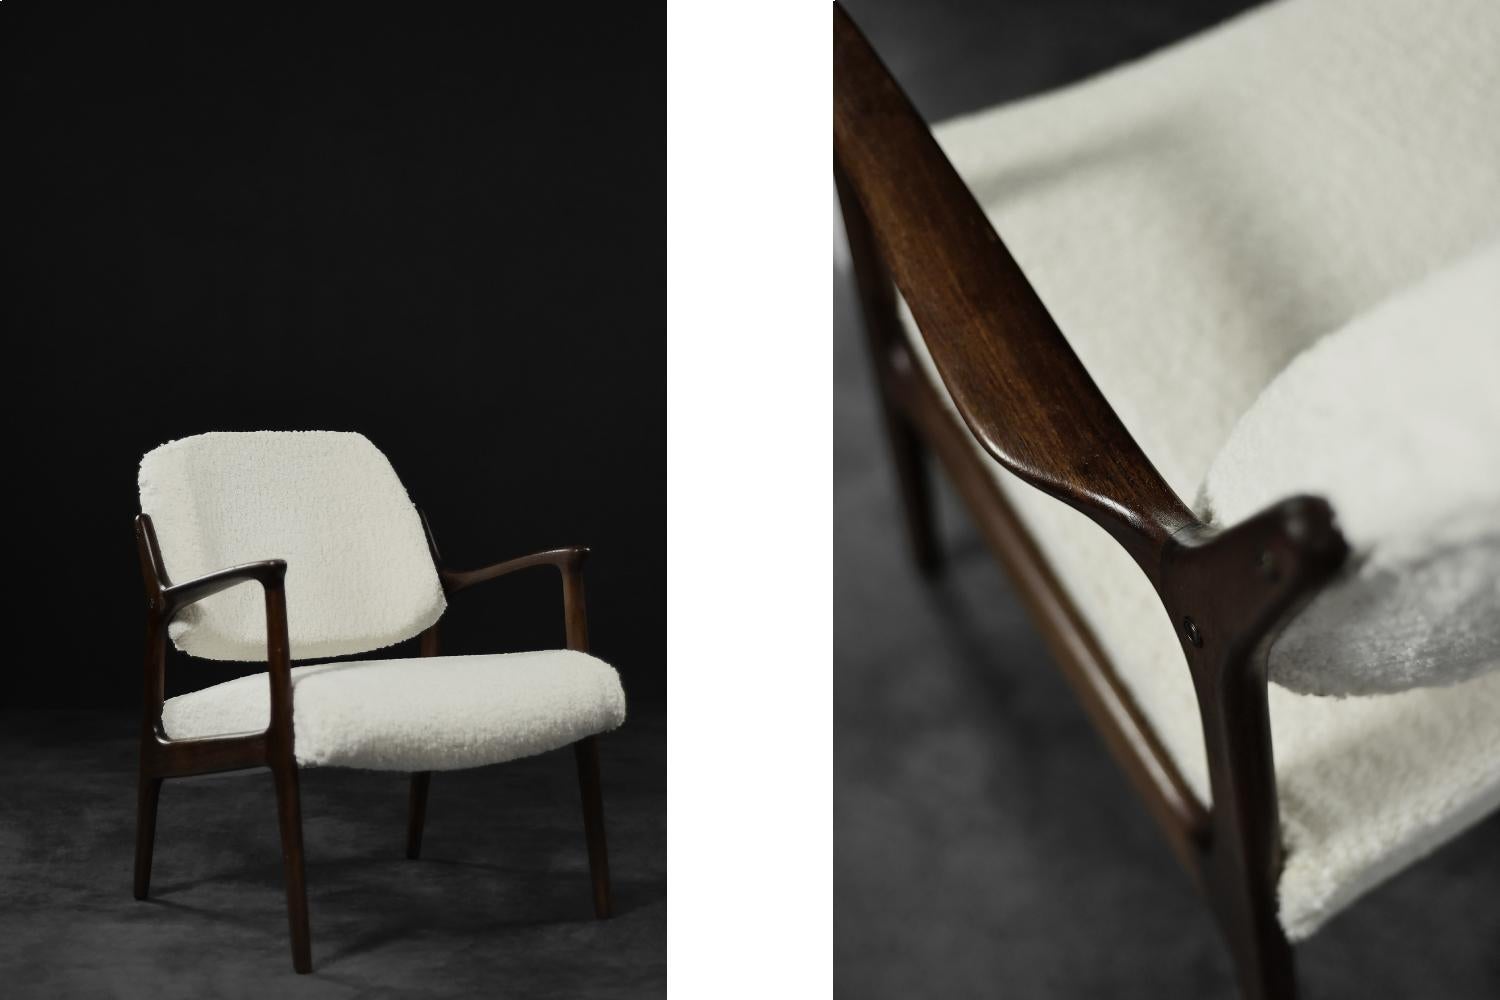 Cette chaise longue moderniste Domus a été conçue par Inge Andersson pour la manufacture suédoise Bröderna Andersson dans les années 1960. L'élégant cadre du fauteuil est en teck dans une nuance de marron. Les pieds de la chaise sont reliés de